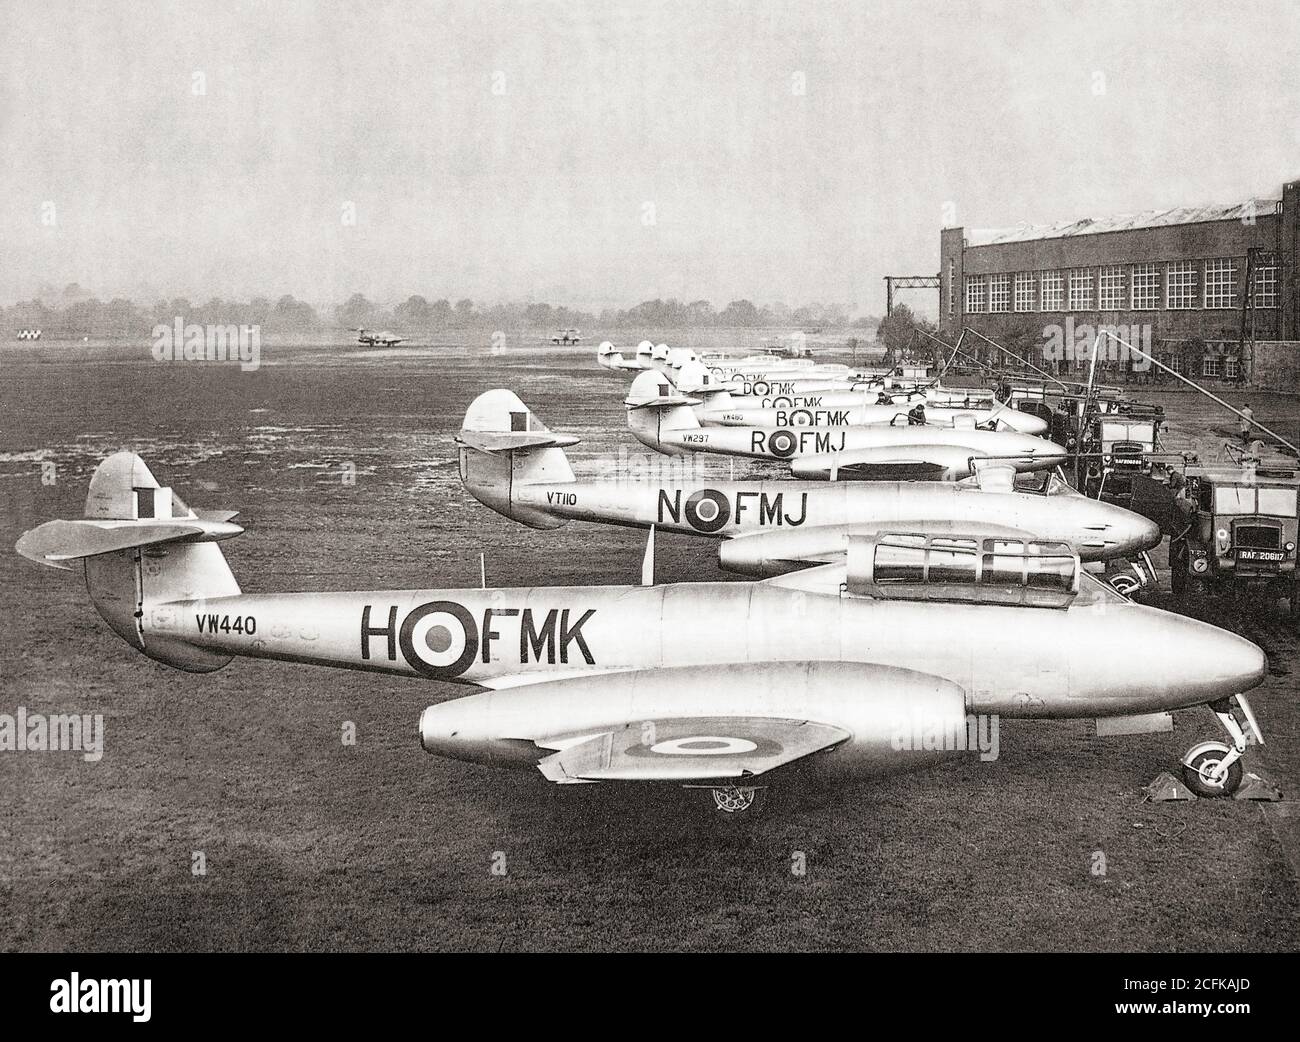 Un allenatore a due posti Gloster Meteor Mk.7 è stato progettato come un'impresa privata da Gloster dopo che l'Argentina ha ordinato 100 Meteor F Mk.4s, e il pilota di allenarsi con loro nel 1947. In mancanza di un allenatore a due posti, Gloster ricostruì un F Mk.4 Meteor danneggiato come allenatore a due posti e volò per la prima volta il 19 marzo 1948. Foto Stock